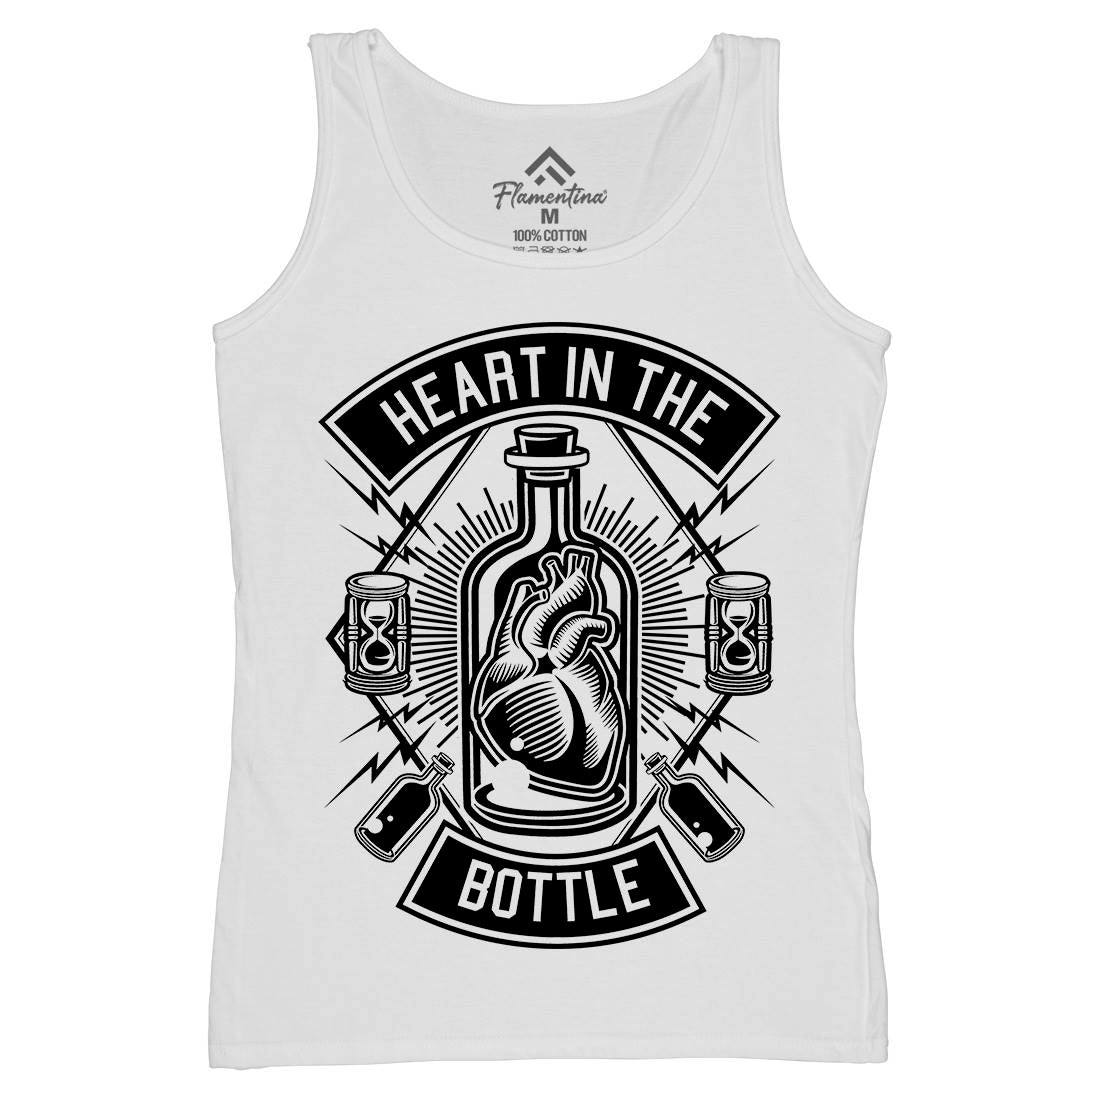 Heart In The Bottle Womens Organic Tank Top Vest Navy B552